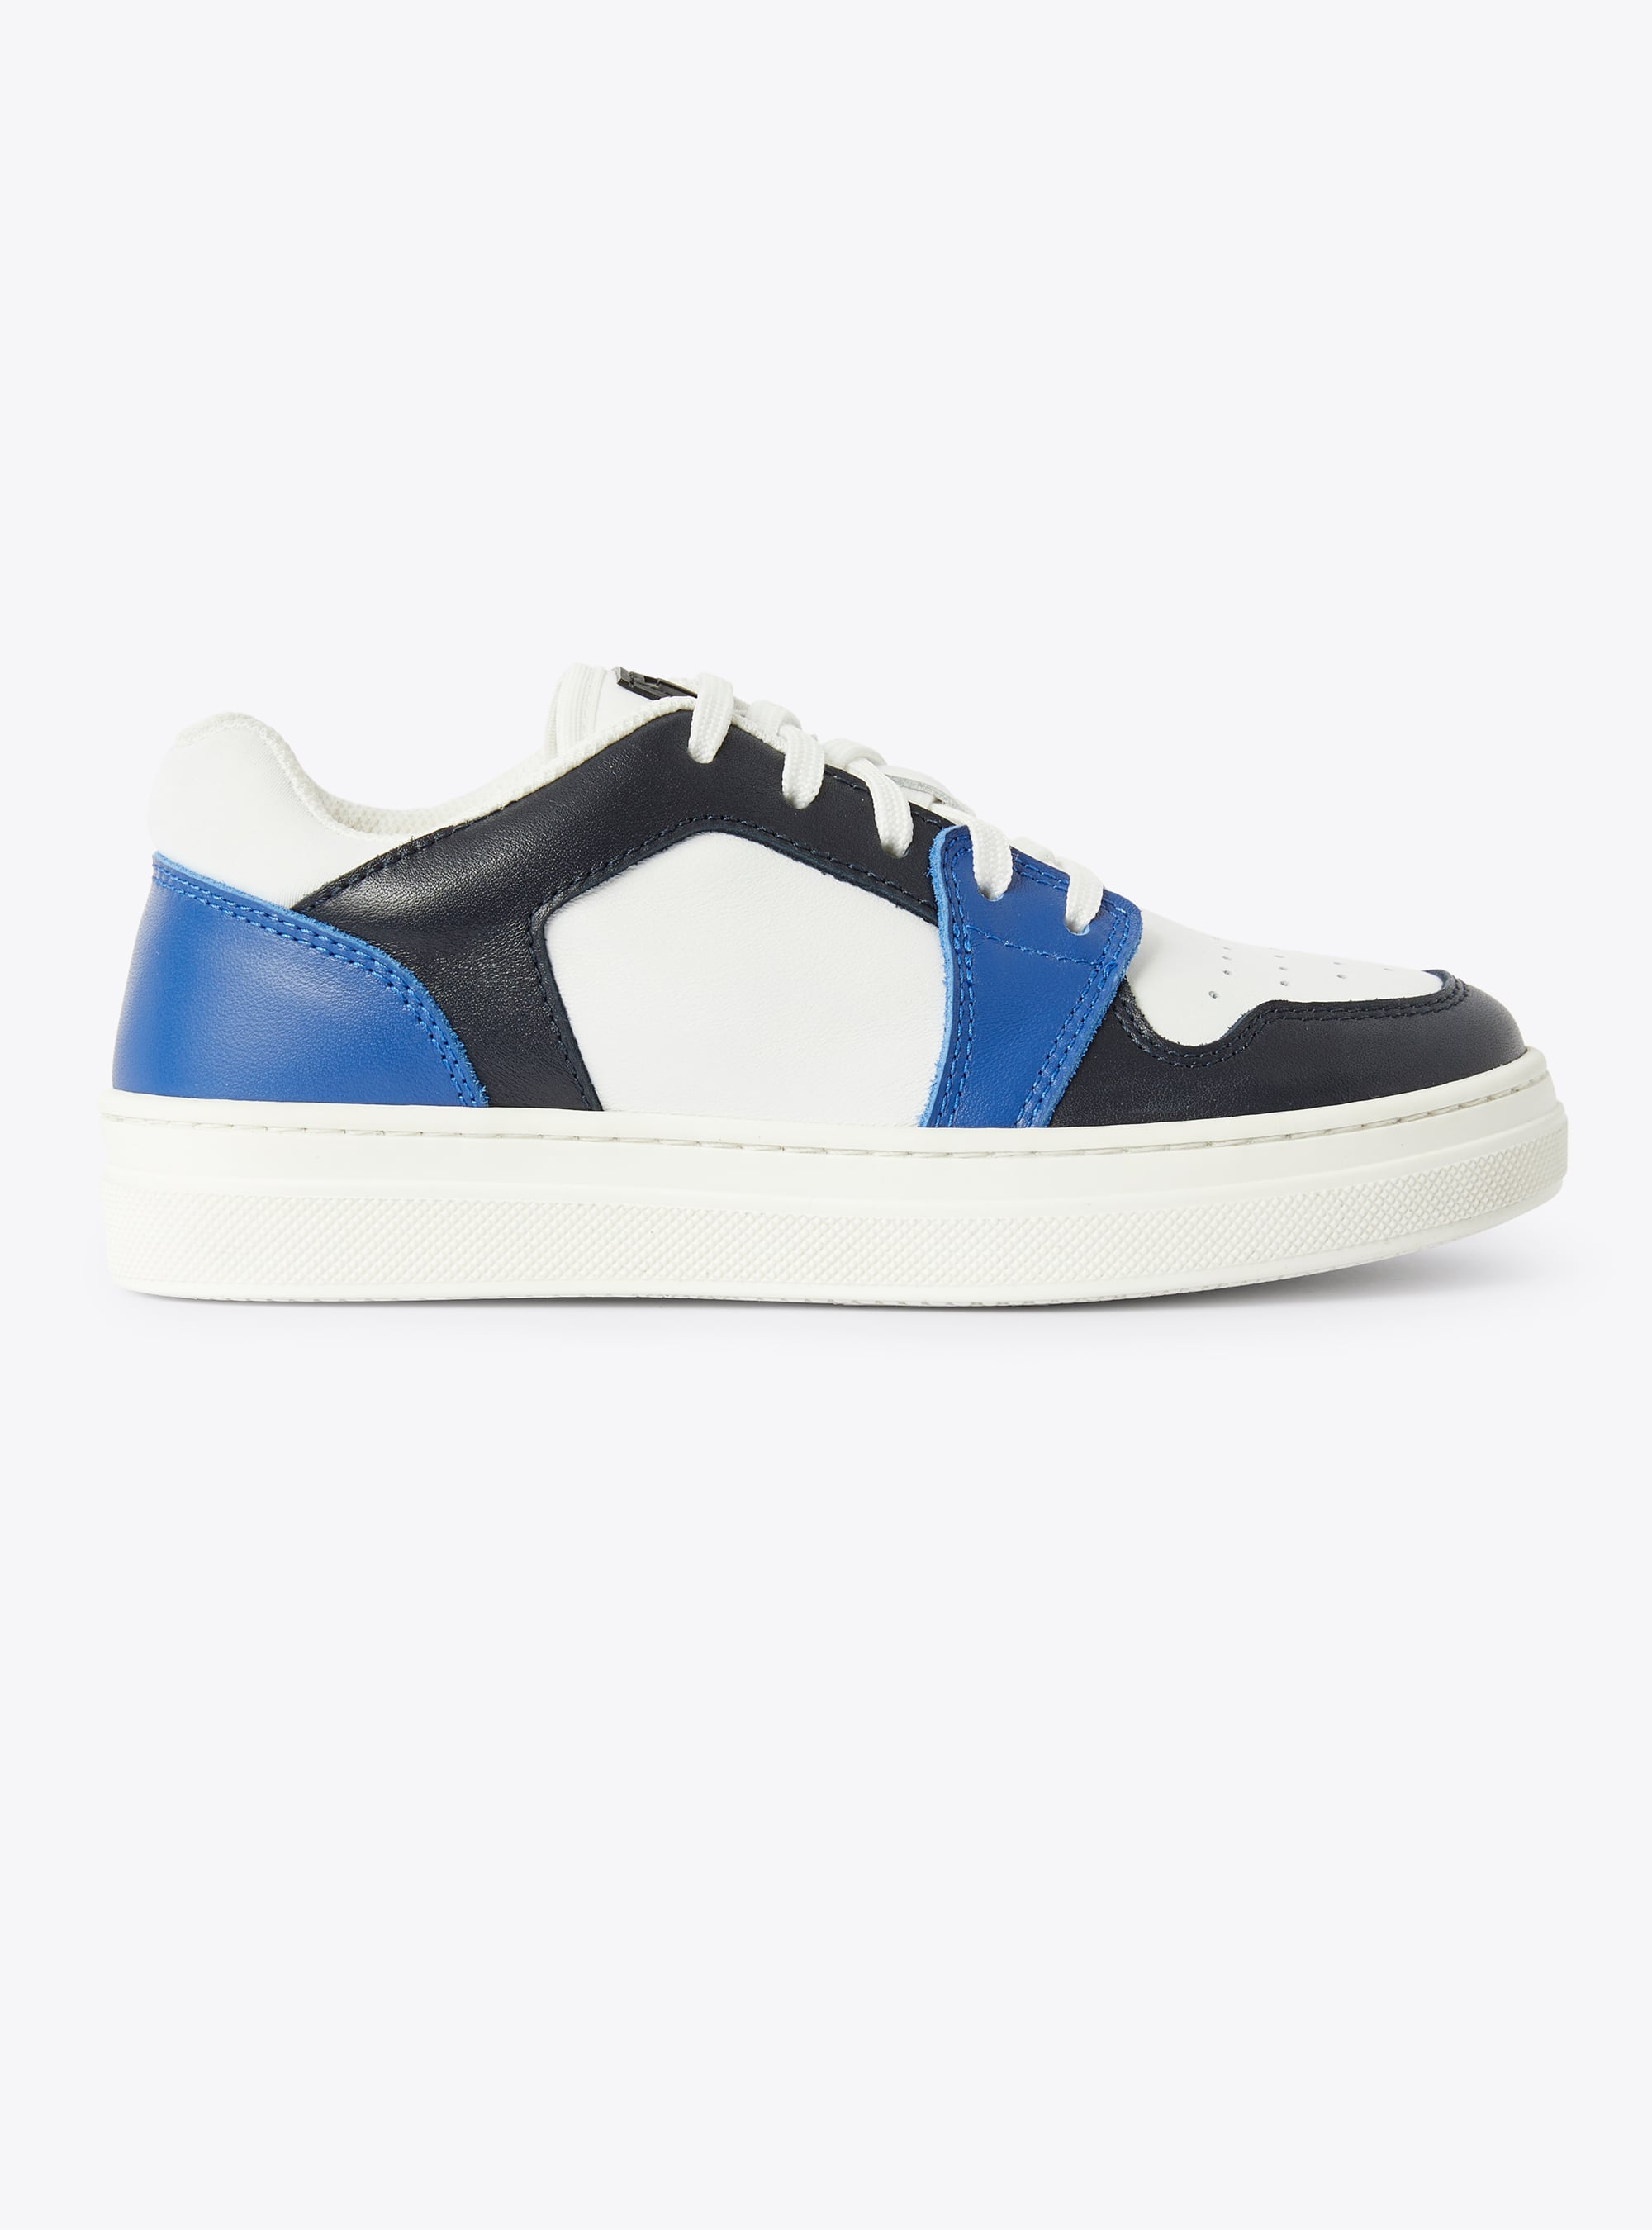 Sneaker IG low top bicolore cobalto e blu - Blu | Il Gufo